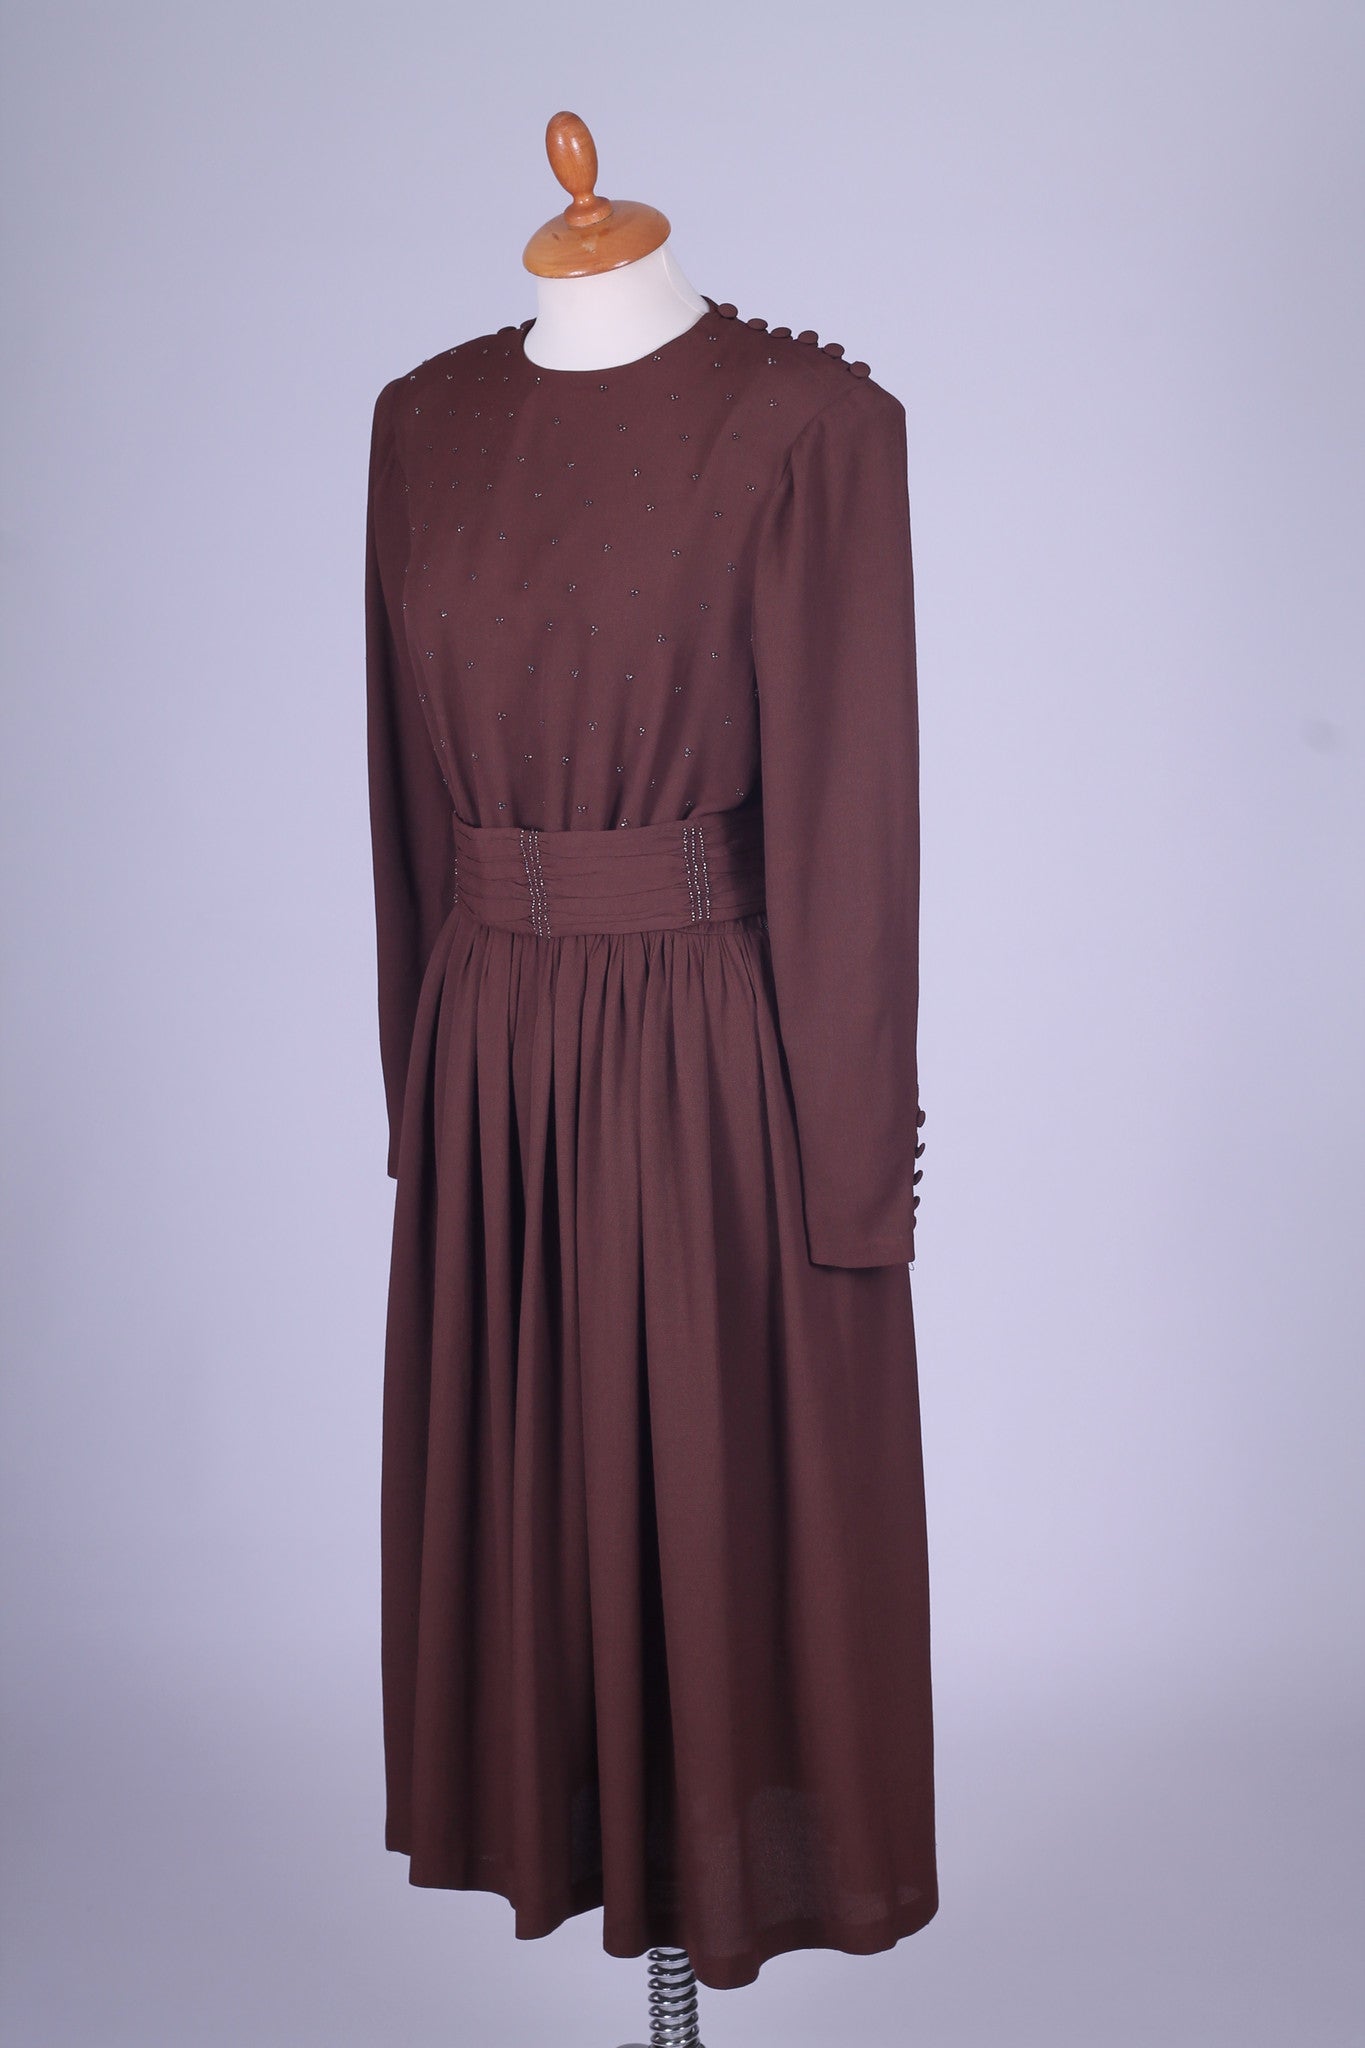 Brun kjole med perlebroderi 1930. S.M